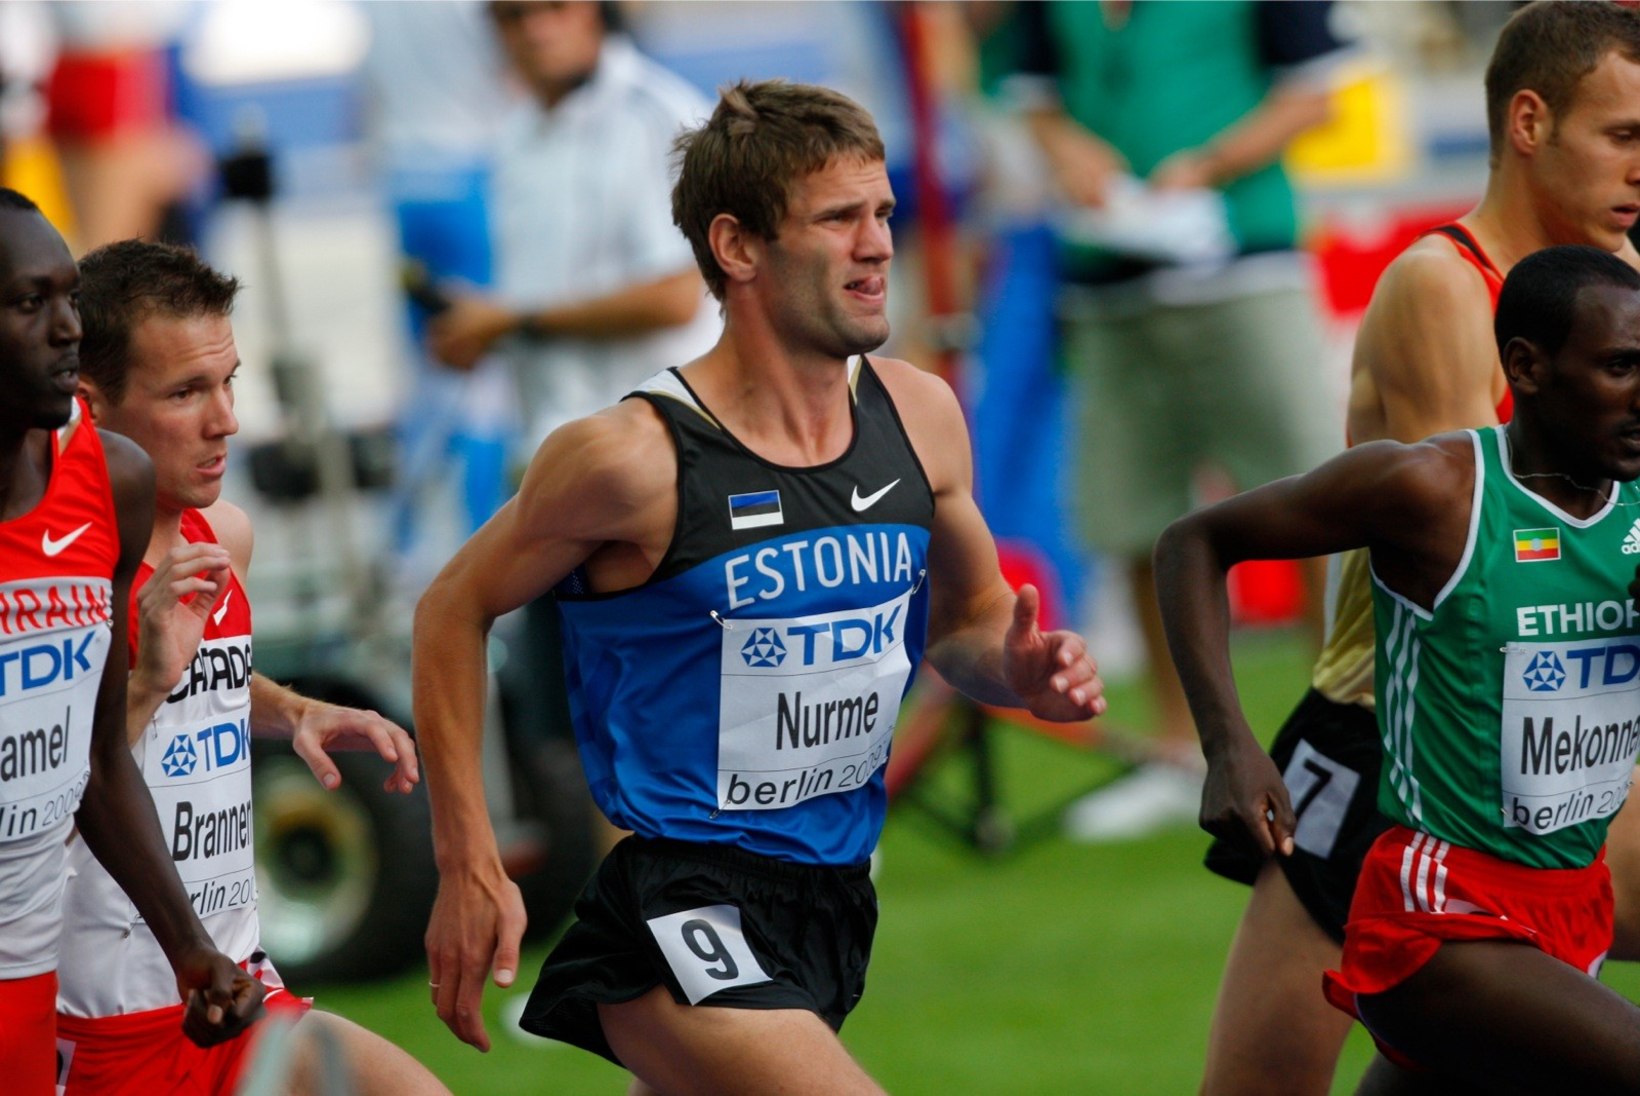 Elu esimese maratoni läbinud Tiidrek Nurme aitas Eesti naismaratoonari olümpiale: aitäh, Tiidrek!